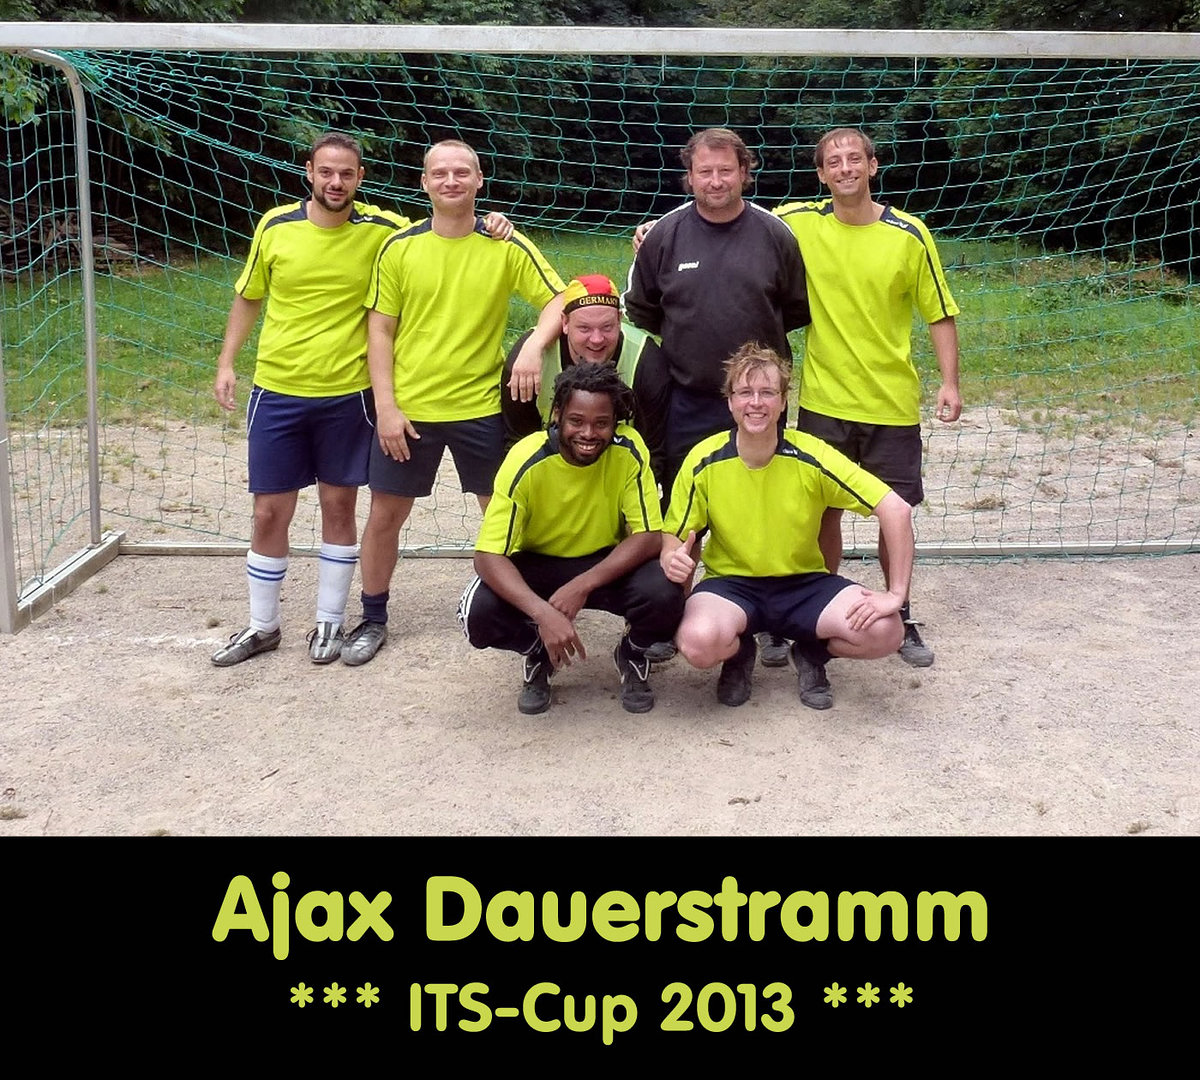 Its cup 2013   teamfotos   ajax dauerstramm retina